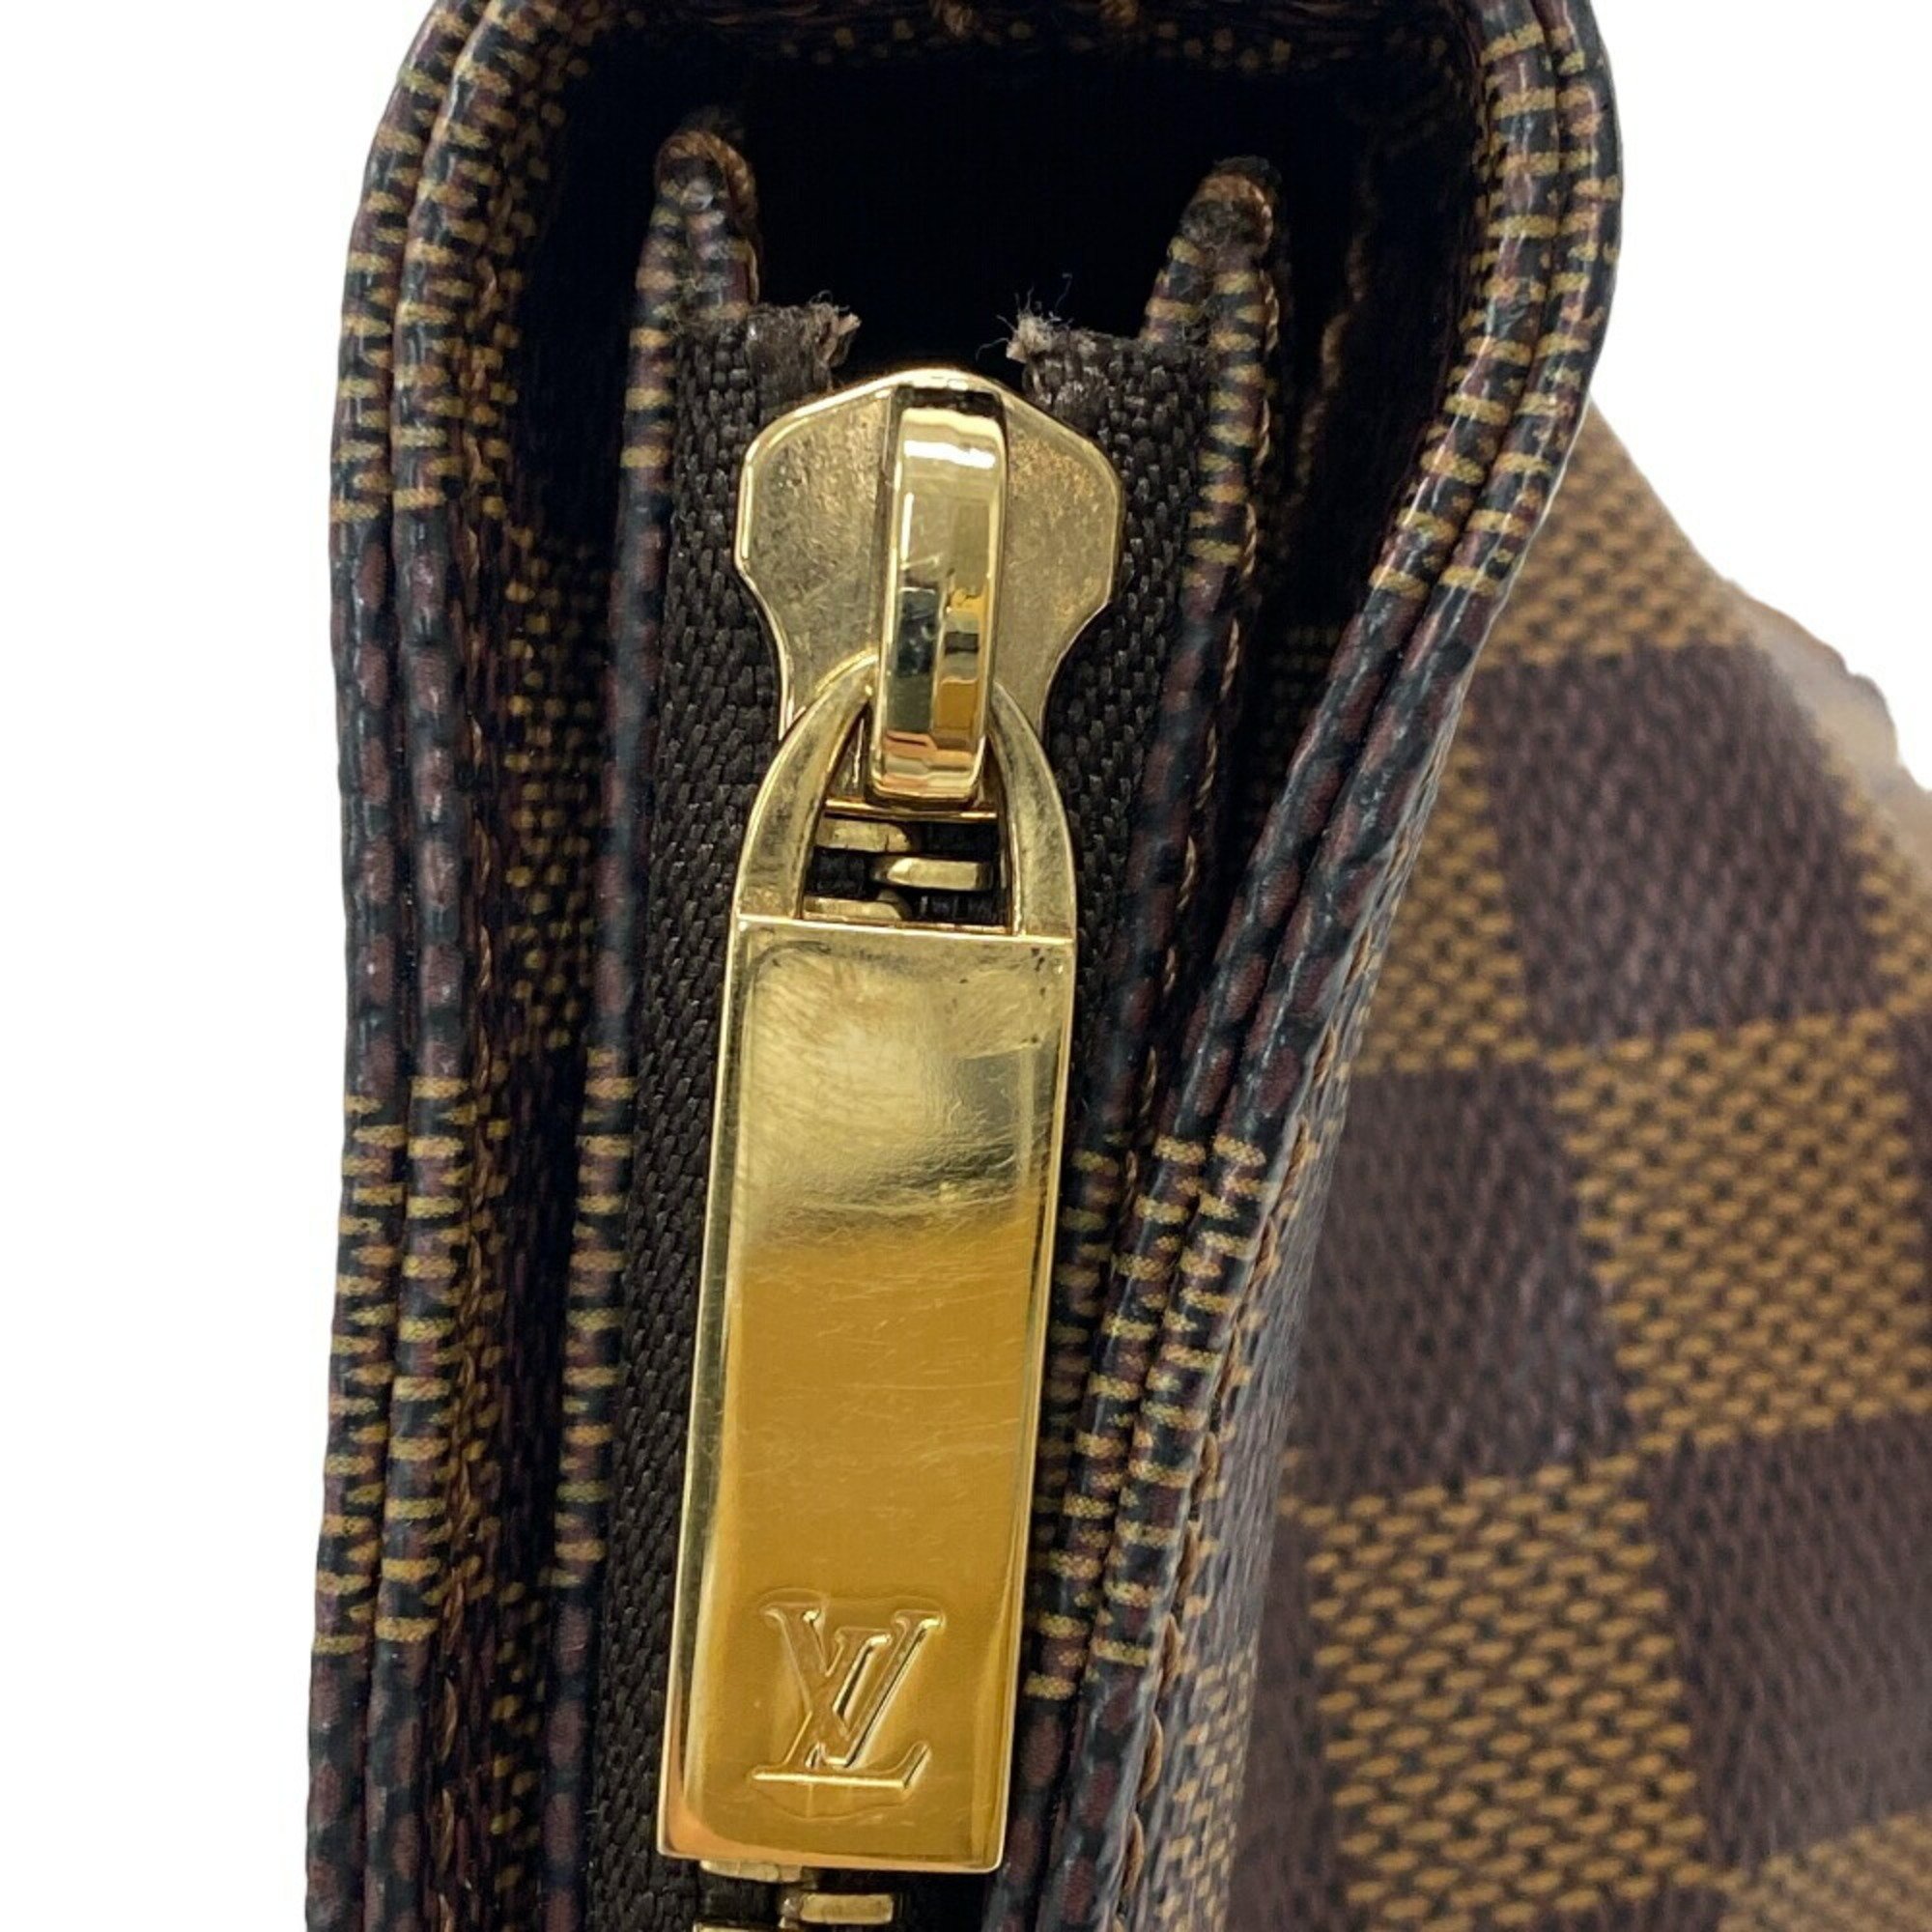 LOUIS VUITTON Louis Vuitton Caba Maison Special Order Damier Tote Bag Brown Women's